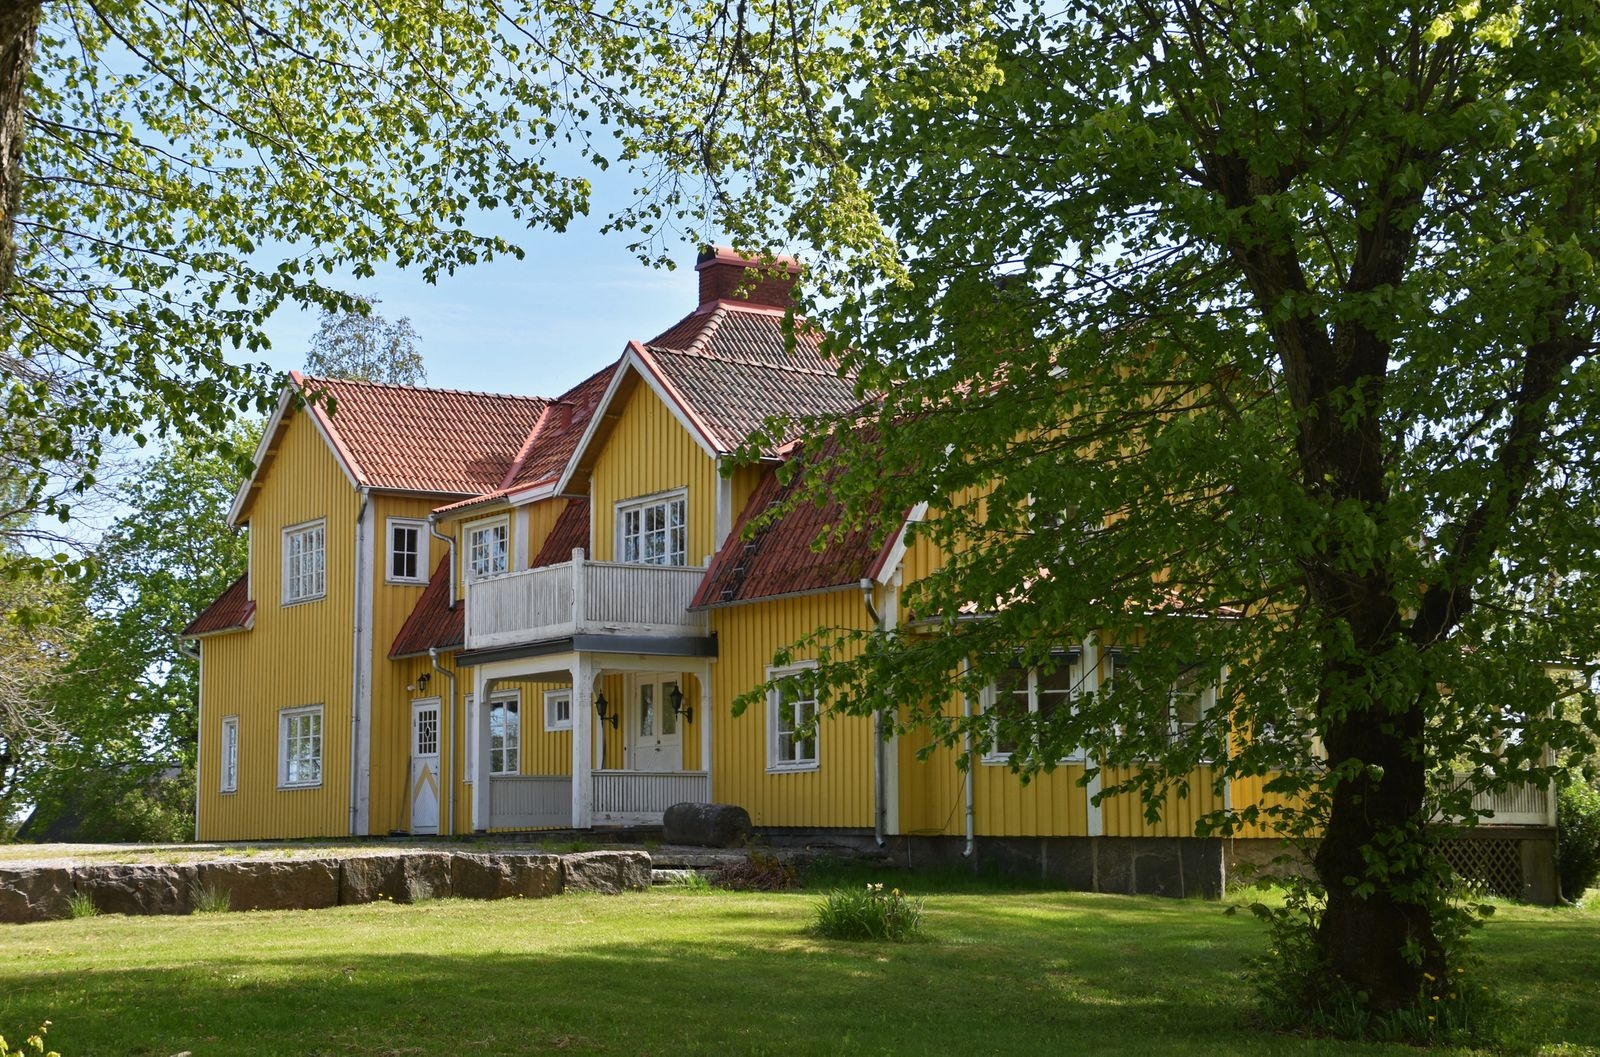 Huvudbyggnaden på Finnekumla gård, uppförd 1850.